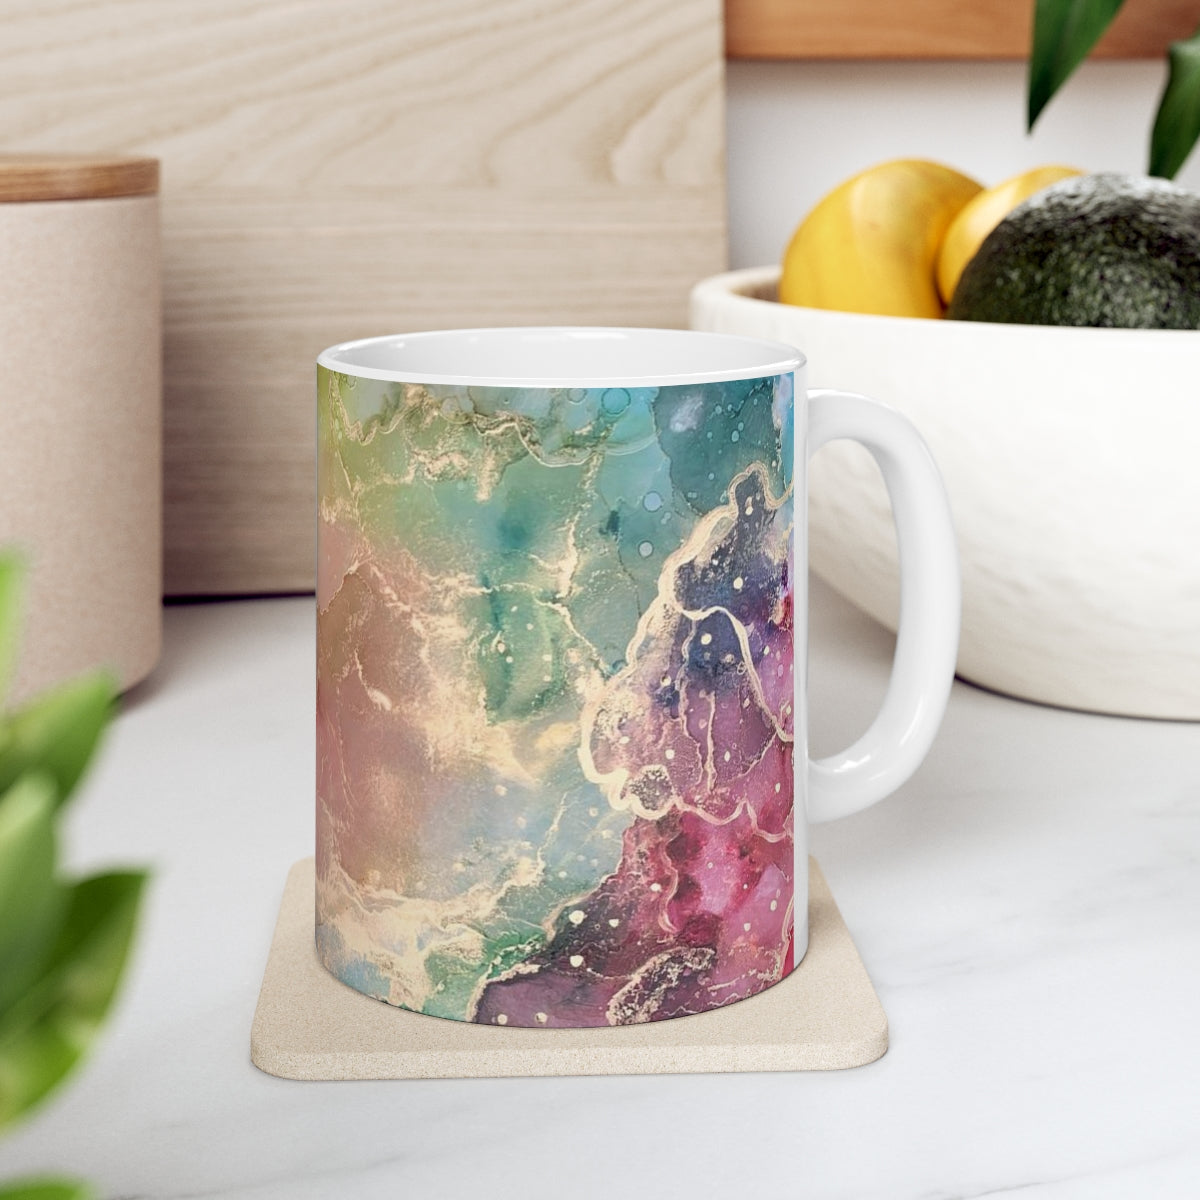 "Twirling through Galaxies" Ceramic Mug 11oz